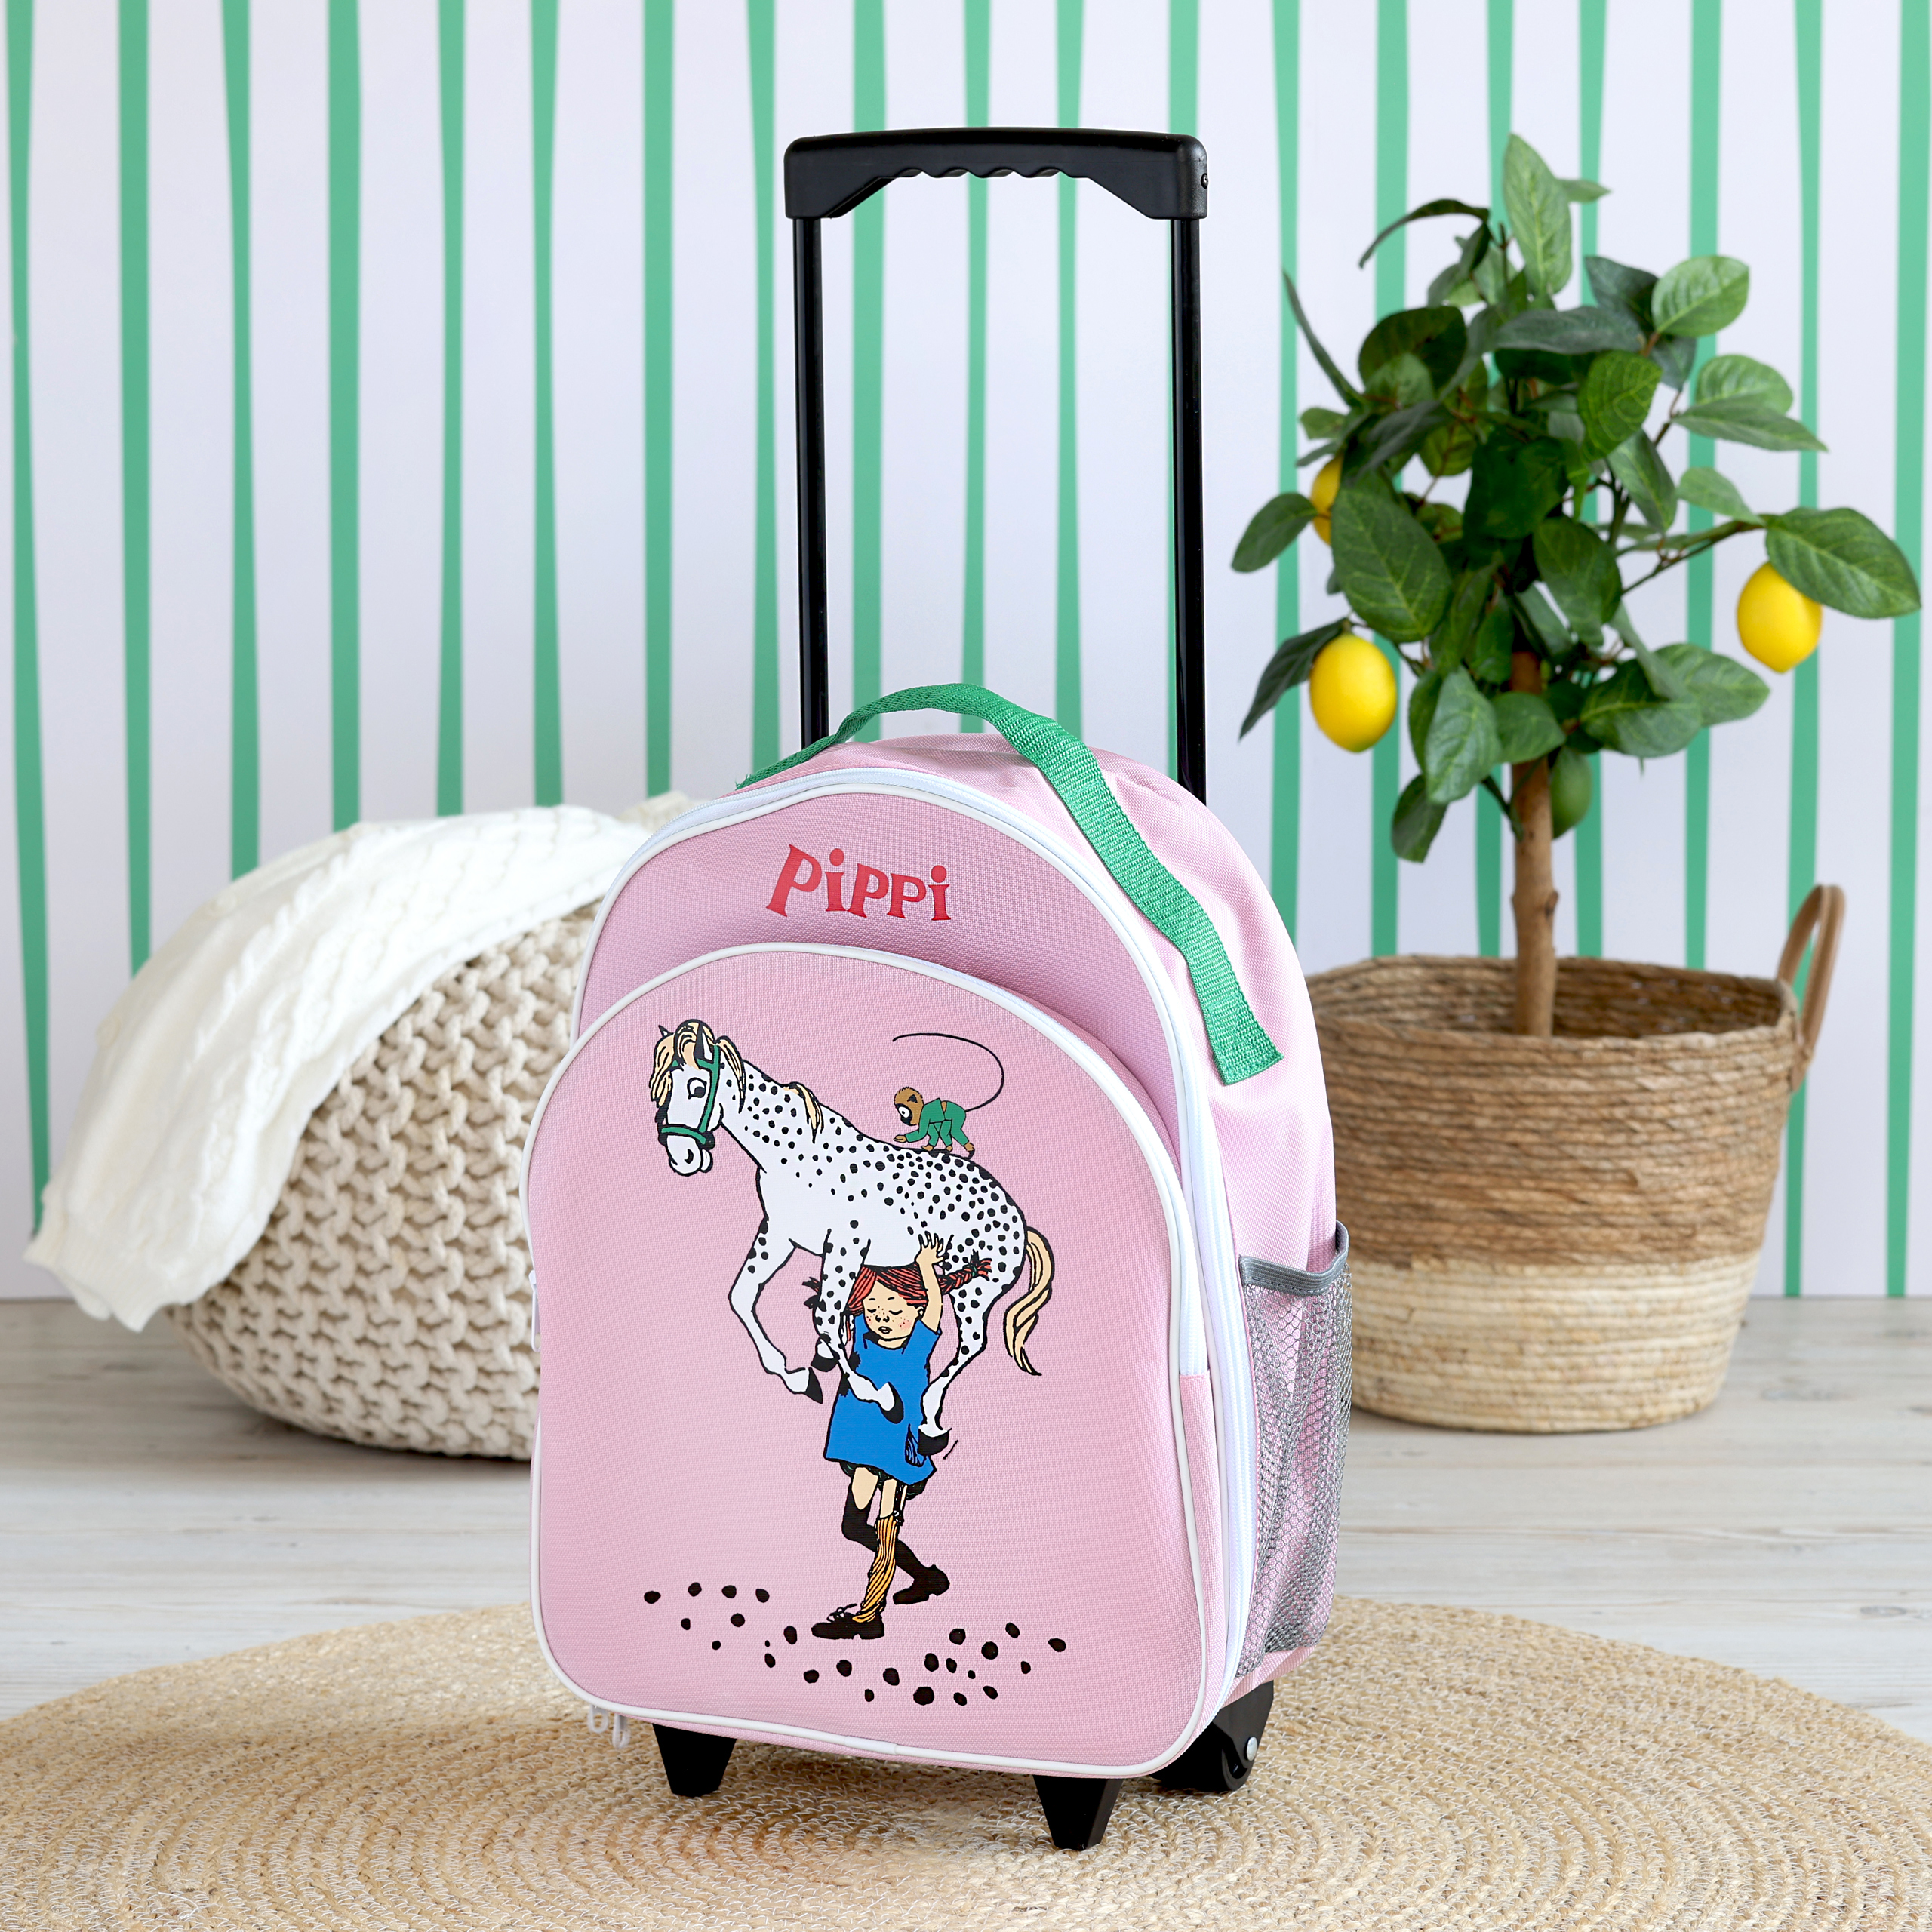 Pippi pippi kids bag travel bag pink